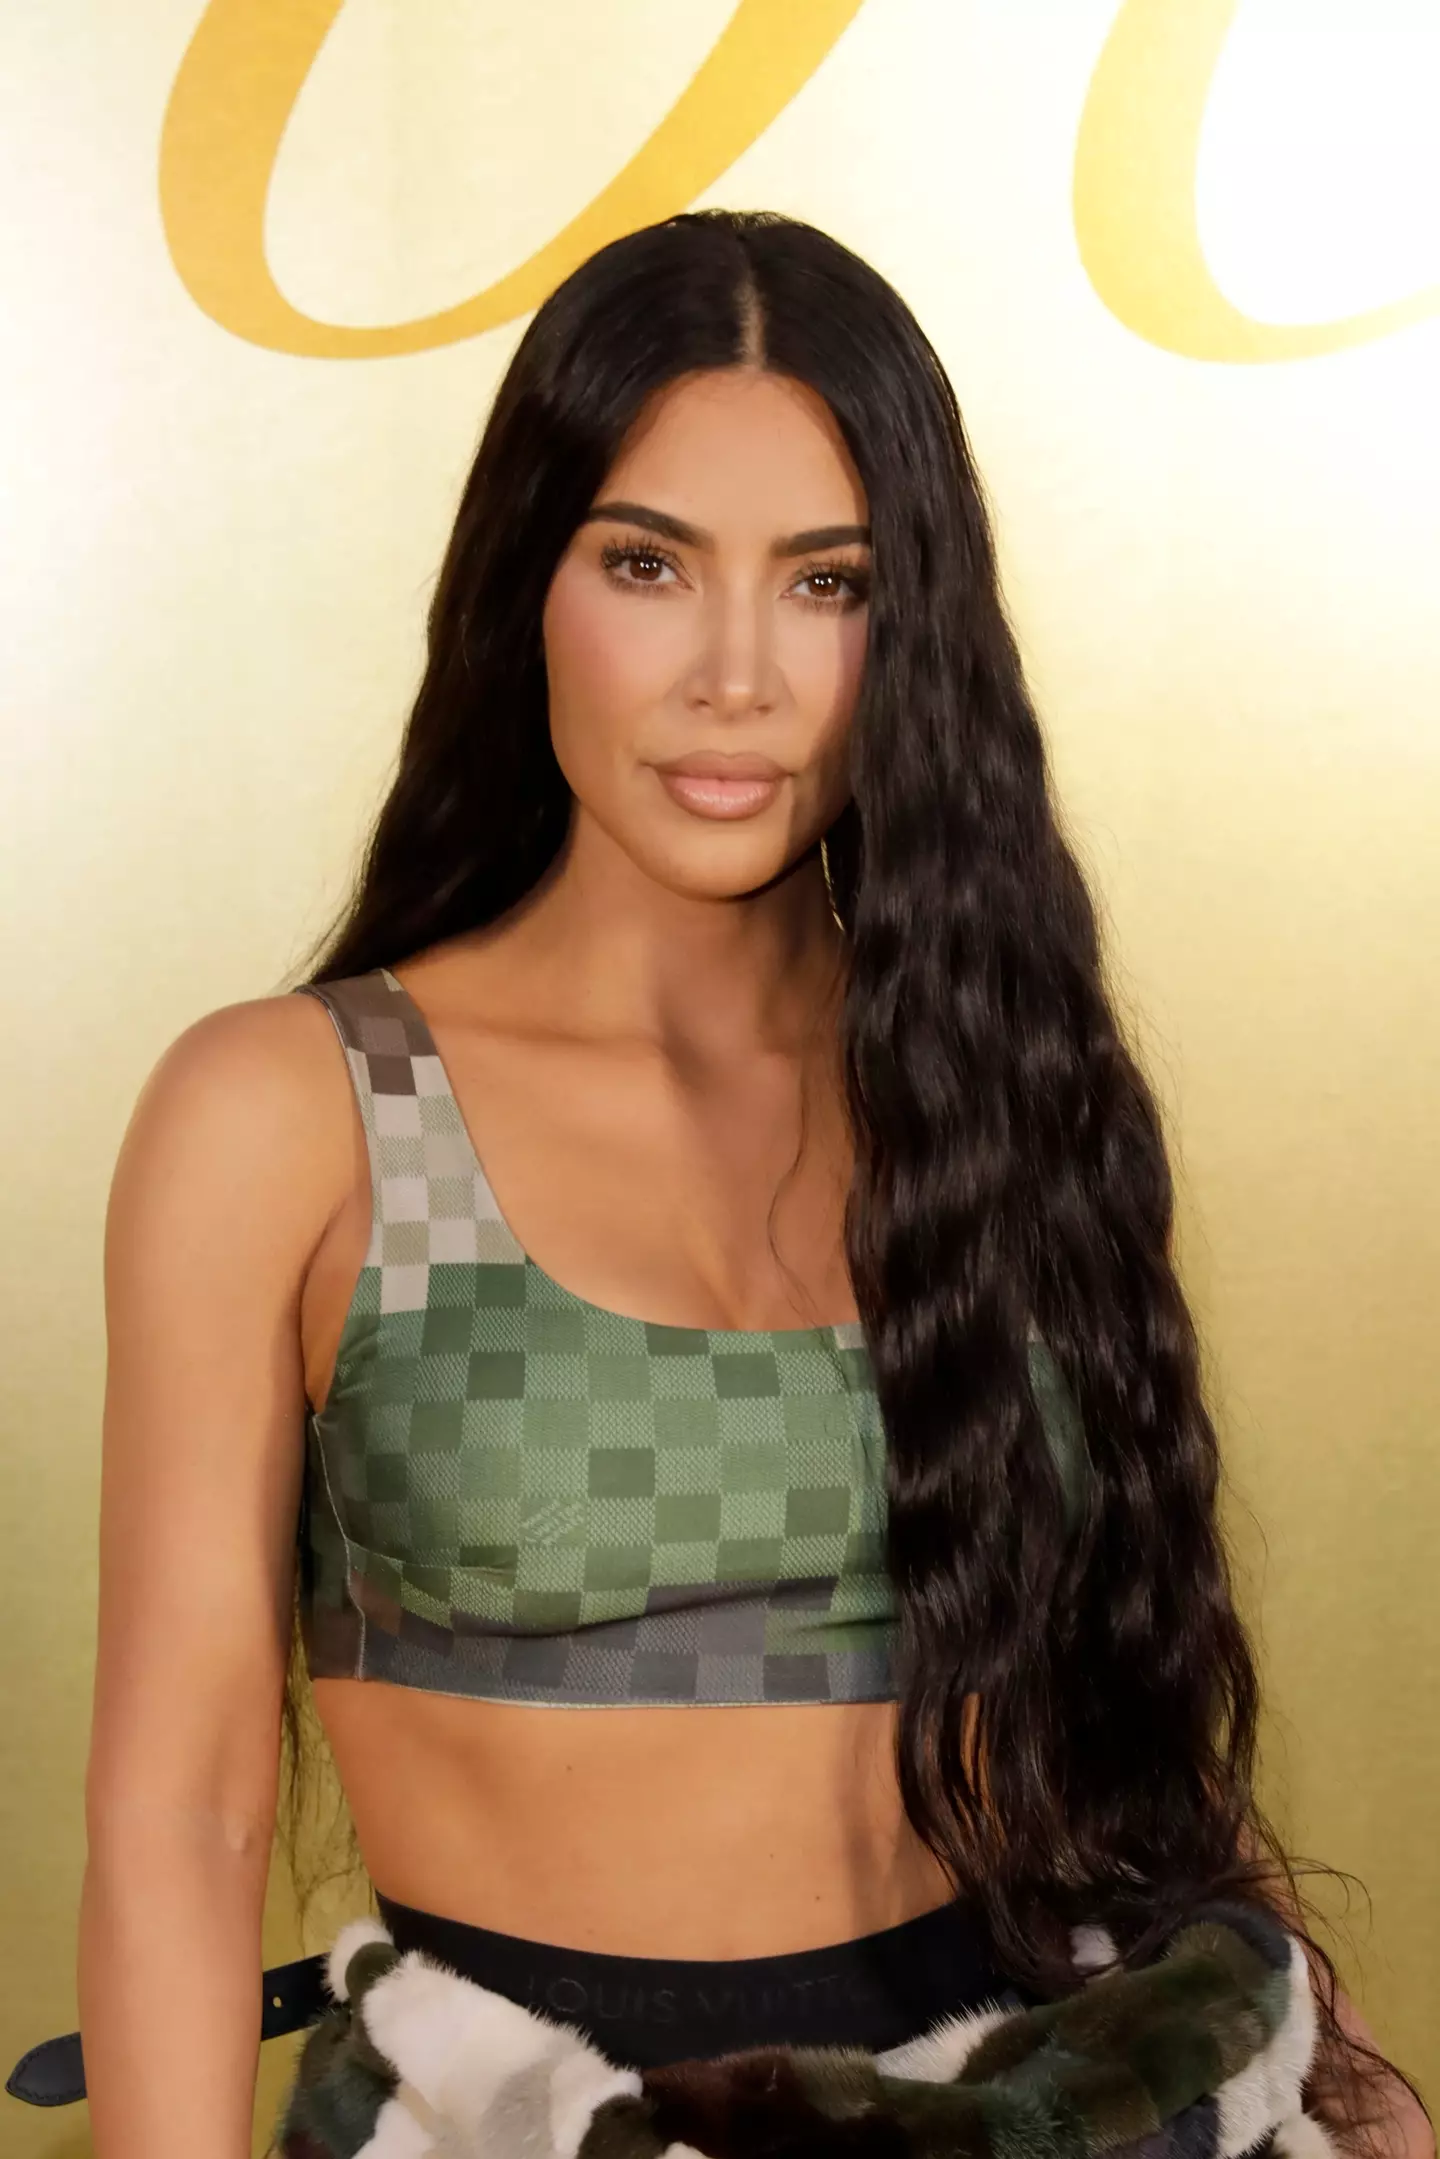 Kim Kardashian was left shocked by the TikTok video.